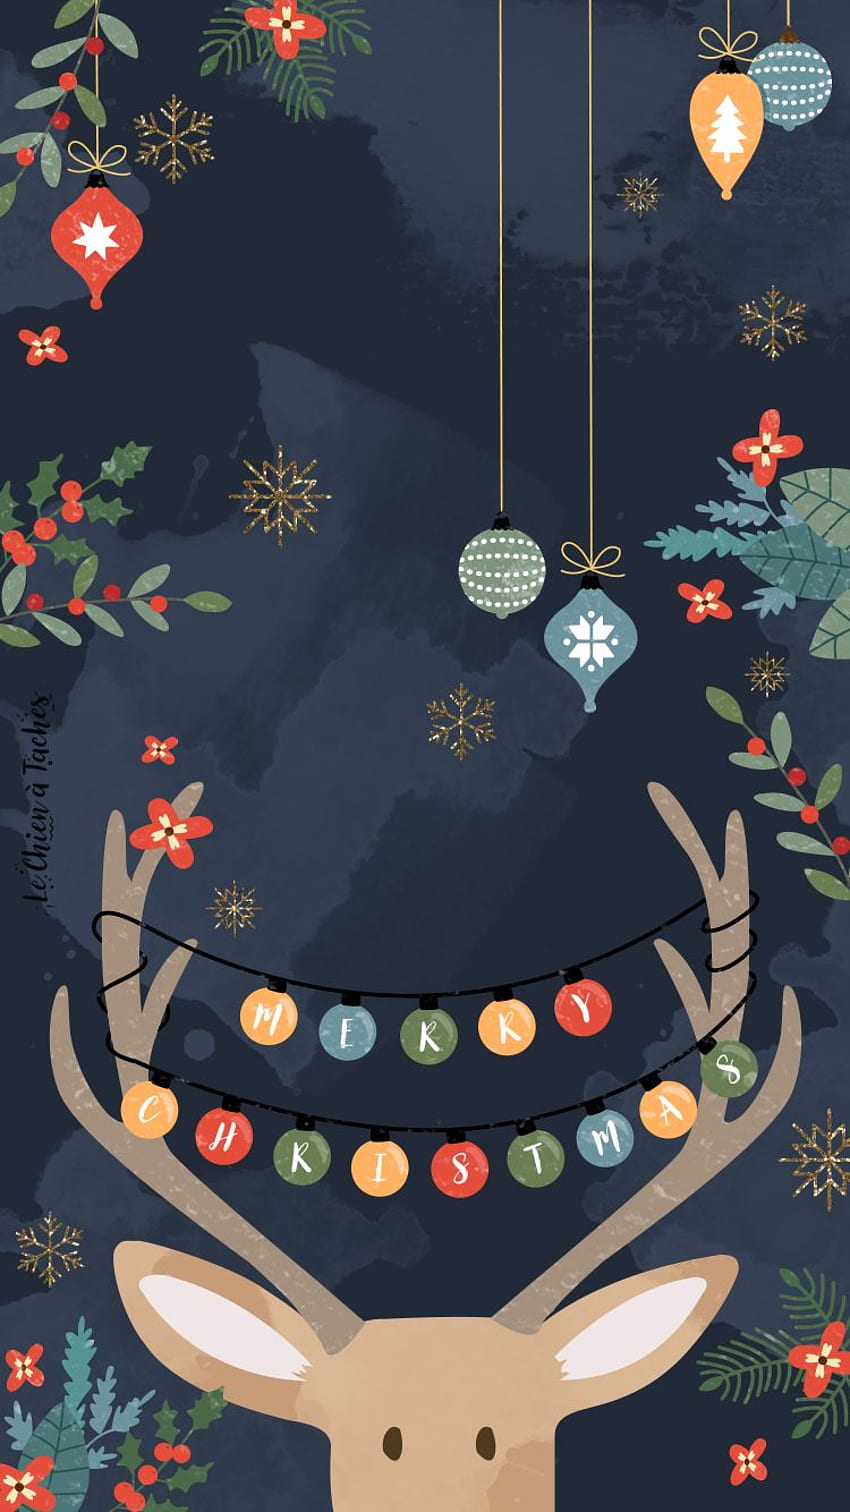 Fond d\'écran de Noël cho điện thoại iPhone sẽ khiến bạn cảm thấy thật sự đặc biệt trong dịp Giáng sinh sắp tới. Hãy đến với chúng tôi và tận hưởng những hình ảnh tuyệt vời để tạo nên bầu không khí lễ hội trong mùa Giáng sinh.